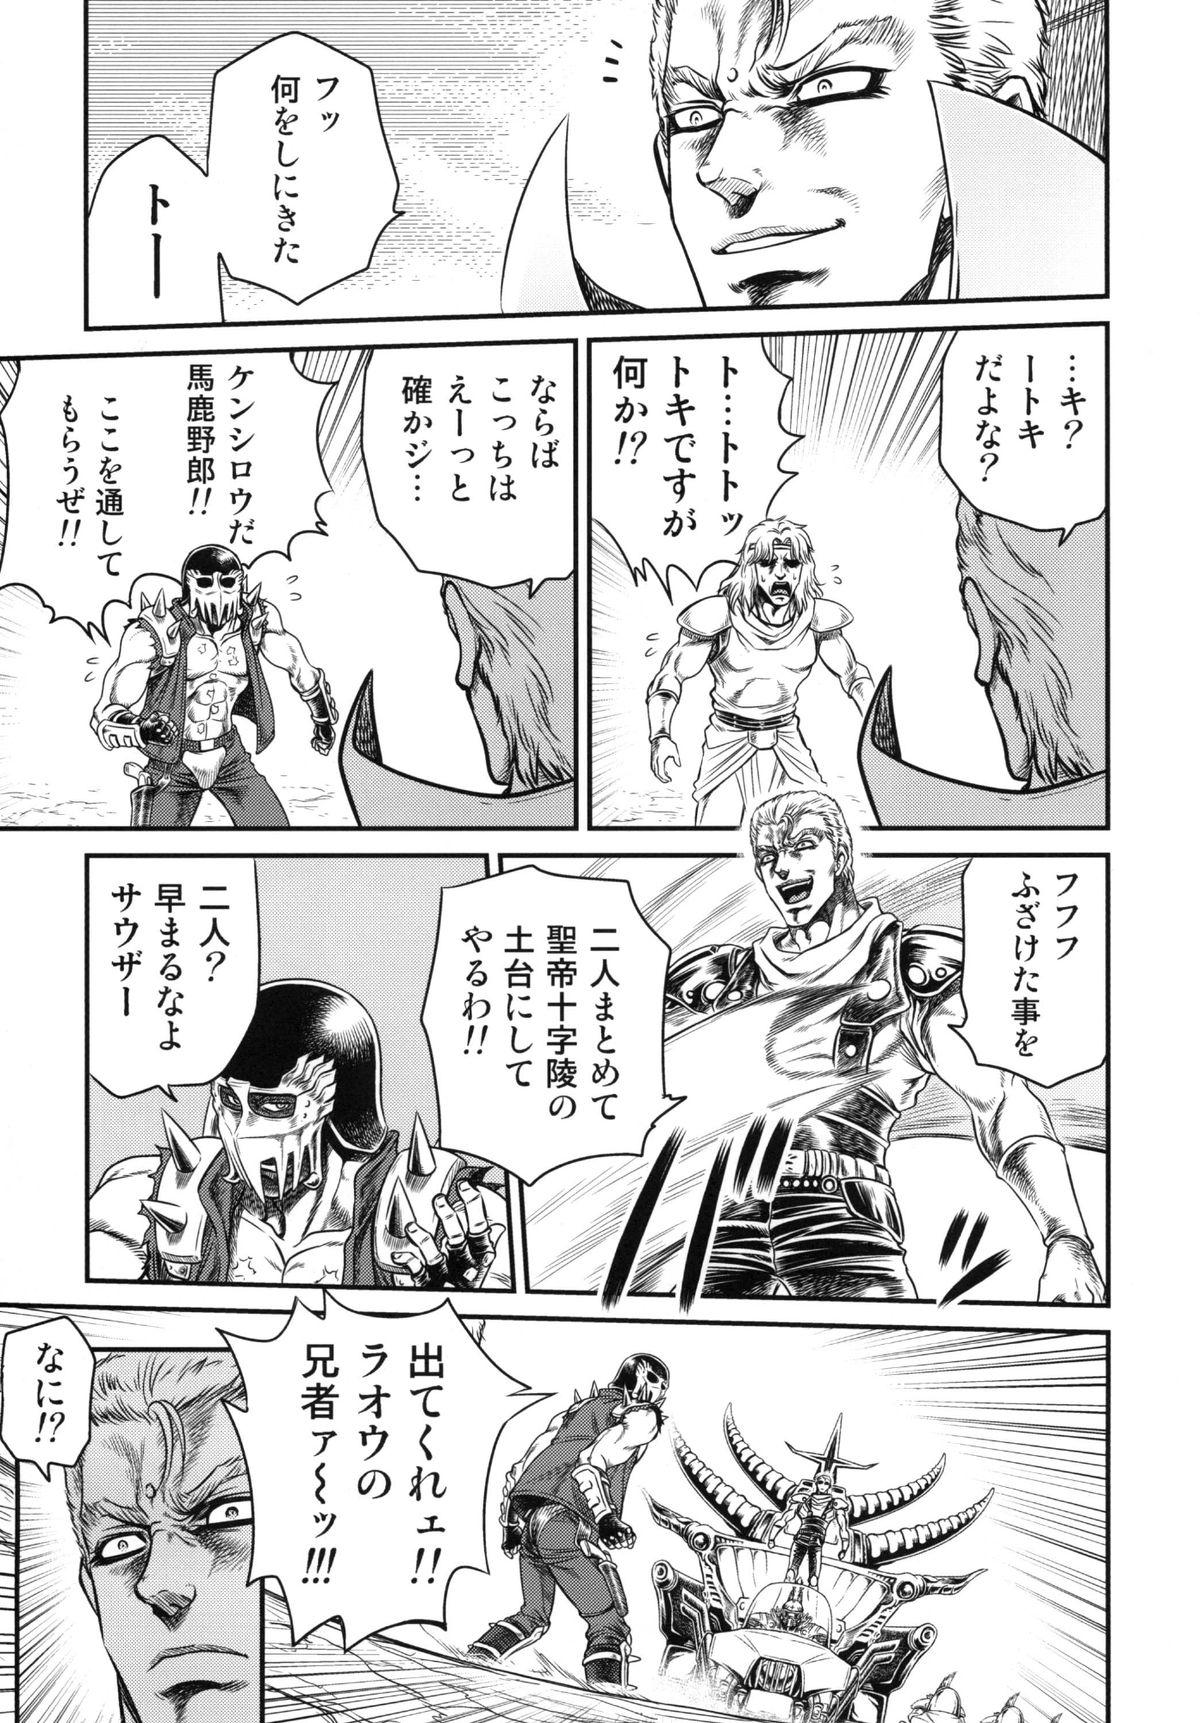 Sluts Seikimatsu Tetsu Kamen Densetsu 3 - Fist of the north star Fishnets - Page 6